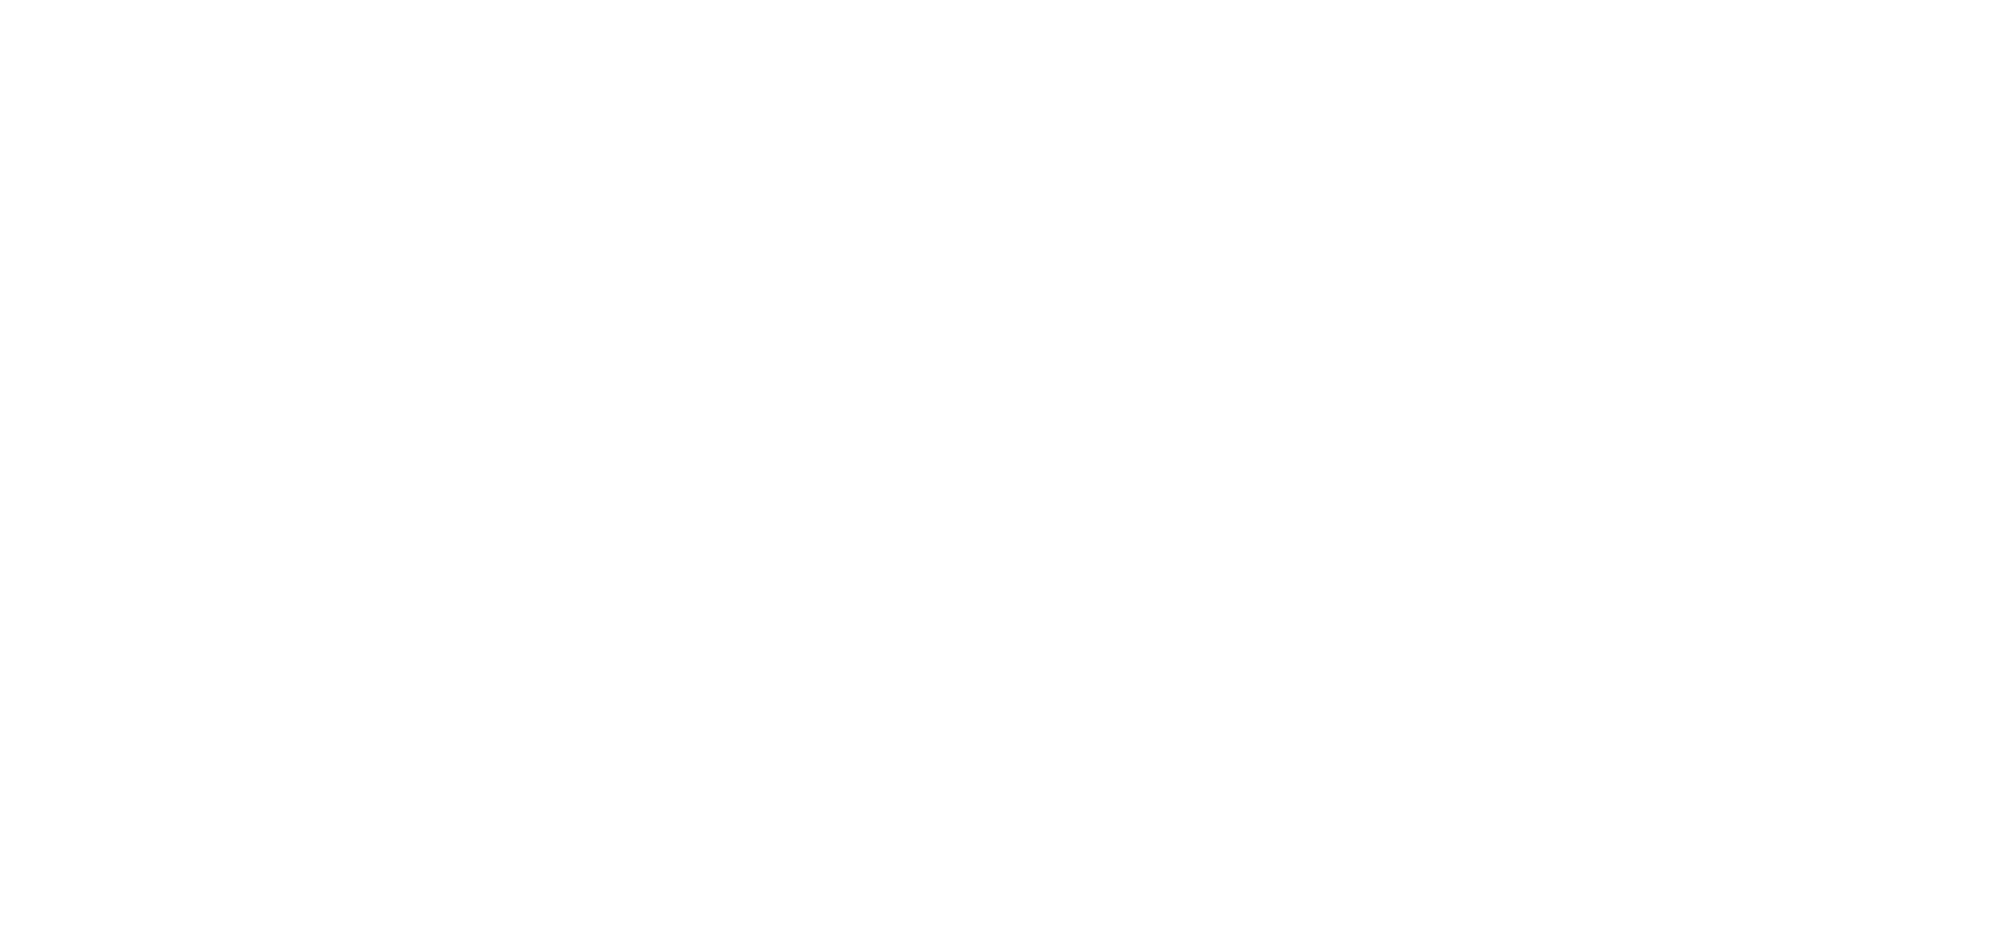 CatPedia